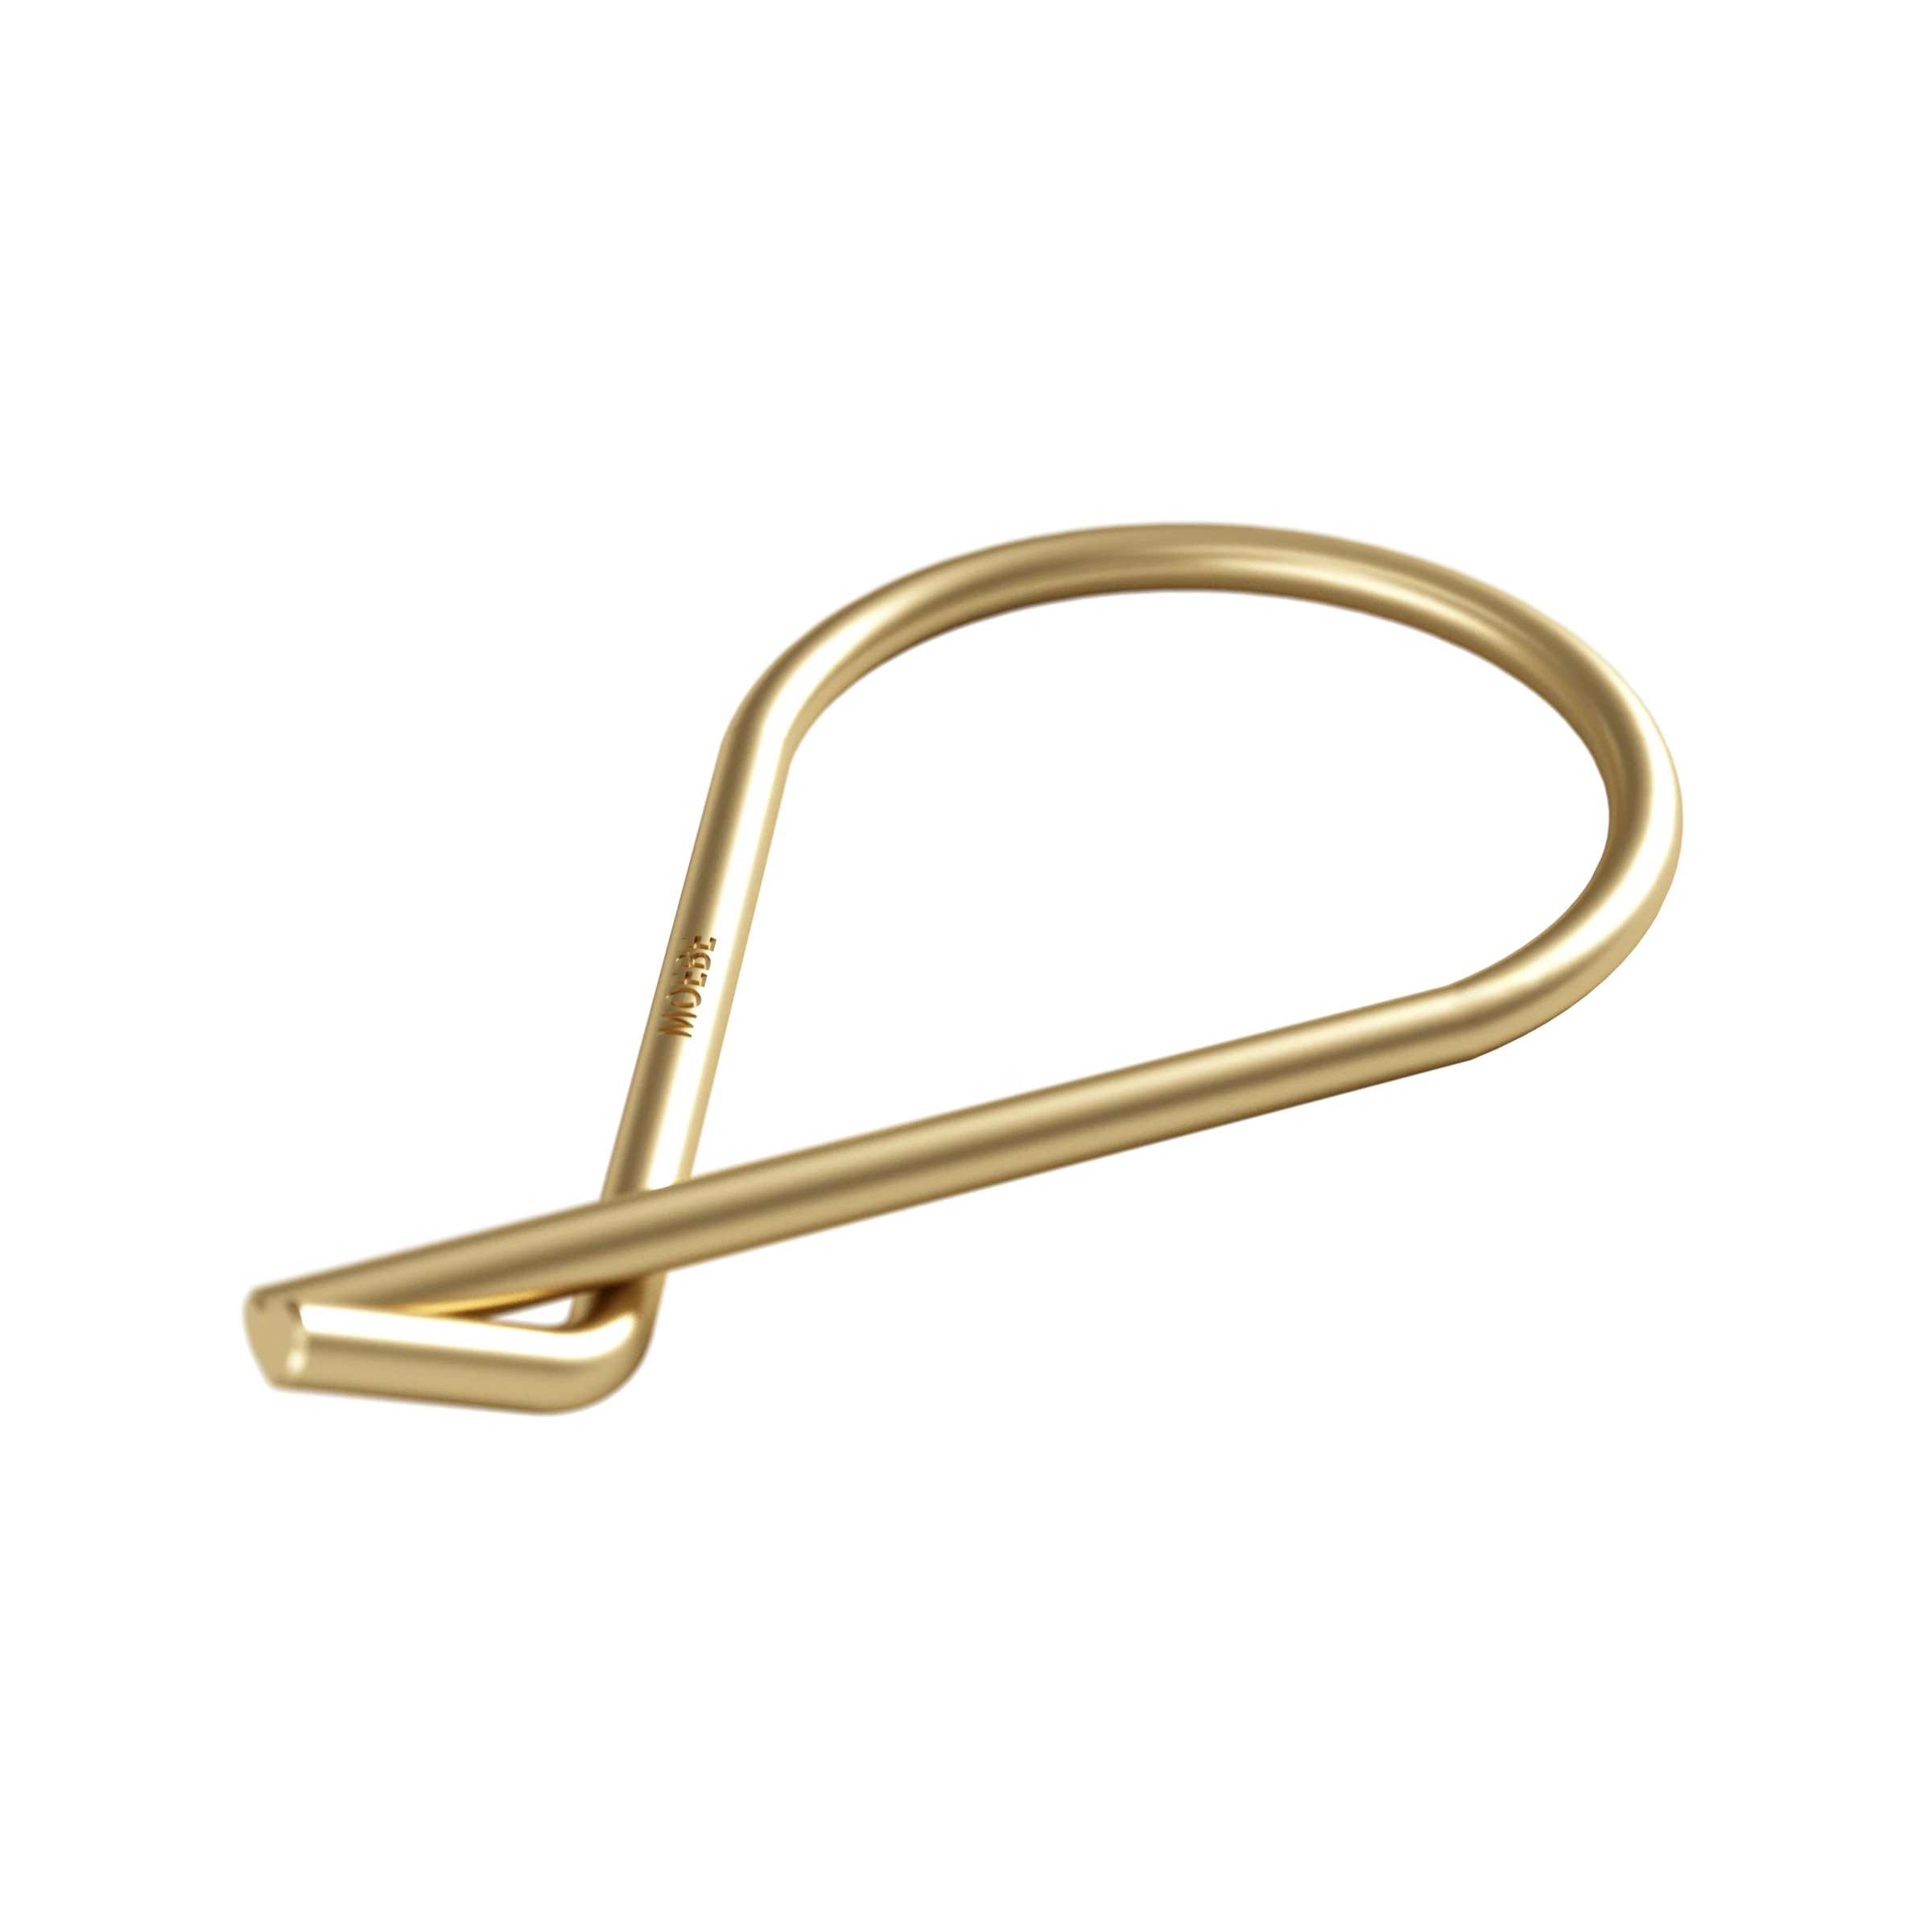 Moebe Key Ring in Brass Or Steel - Lifestory